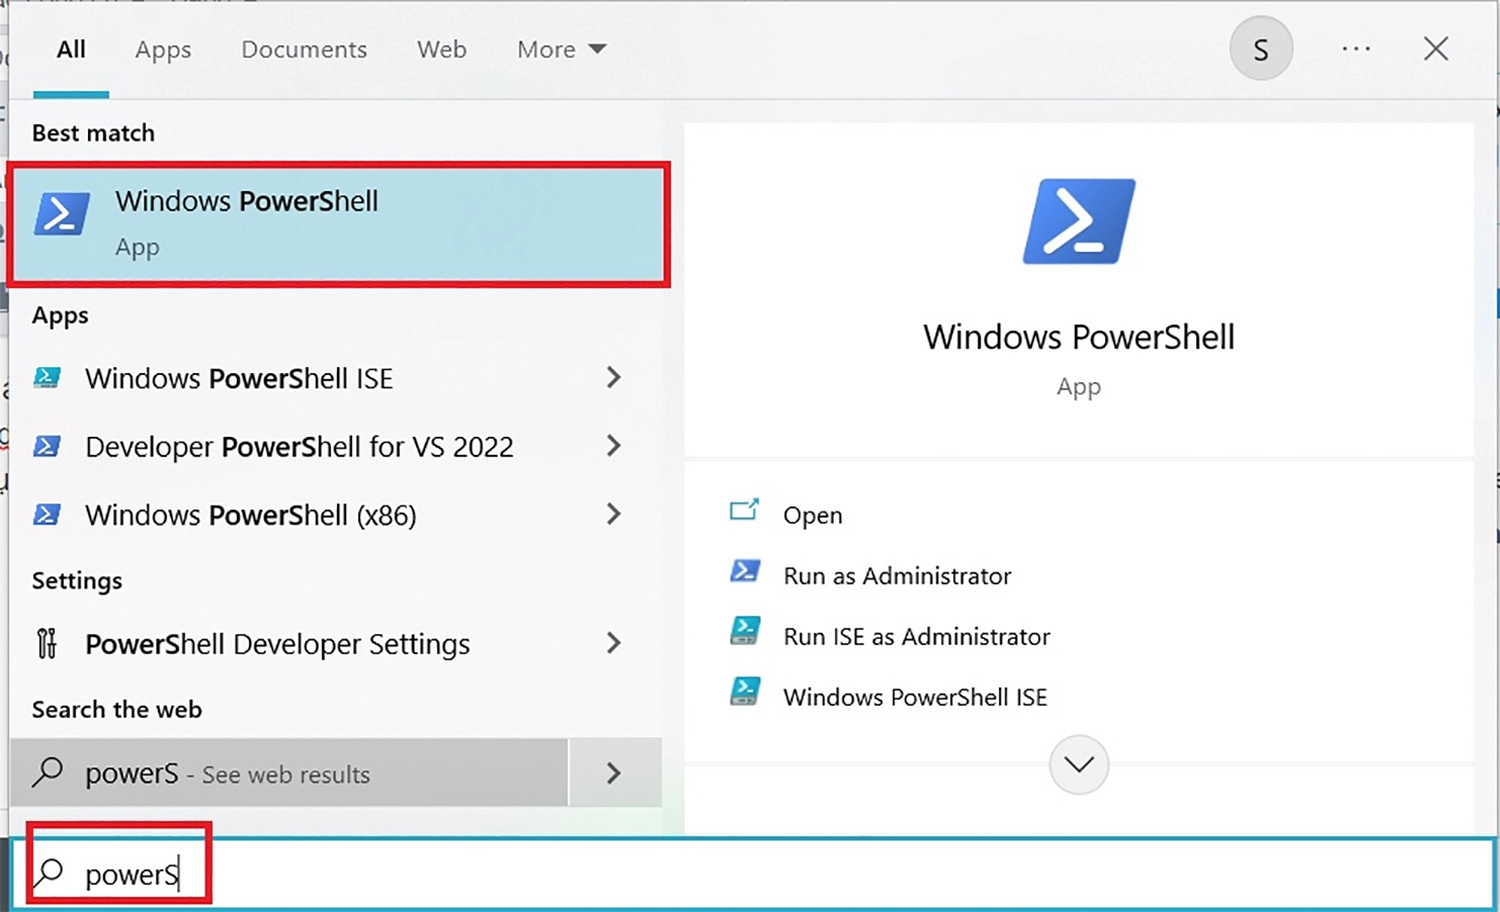 Bạn tìm Windows PowerShell trong thanh tìm kiếm